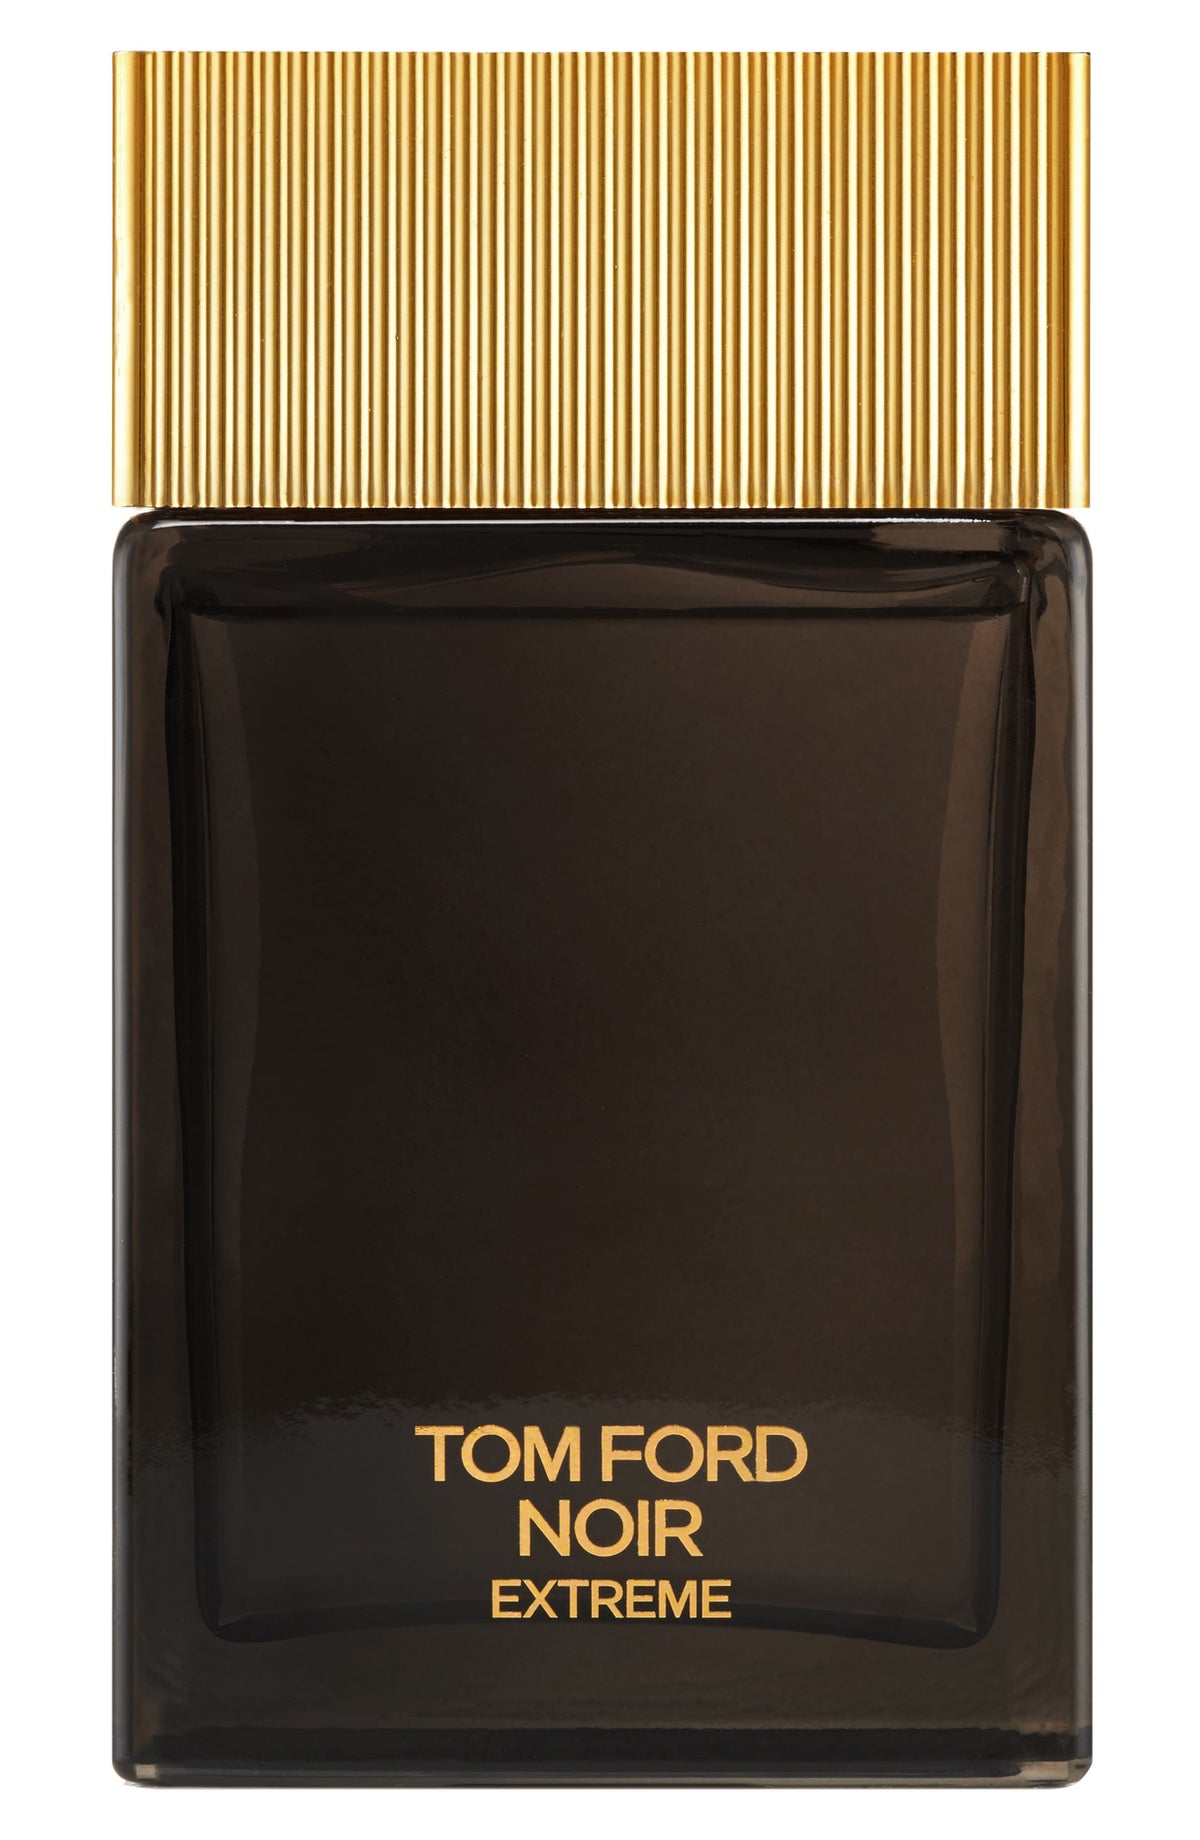 TOM FORD Noir Extreme Eau de Parfum Spray 1.7 oz